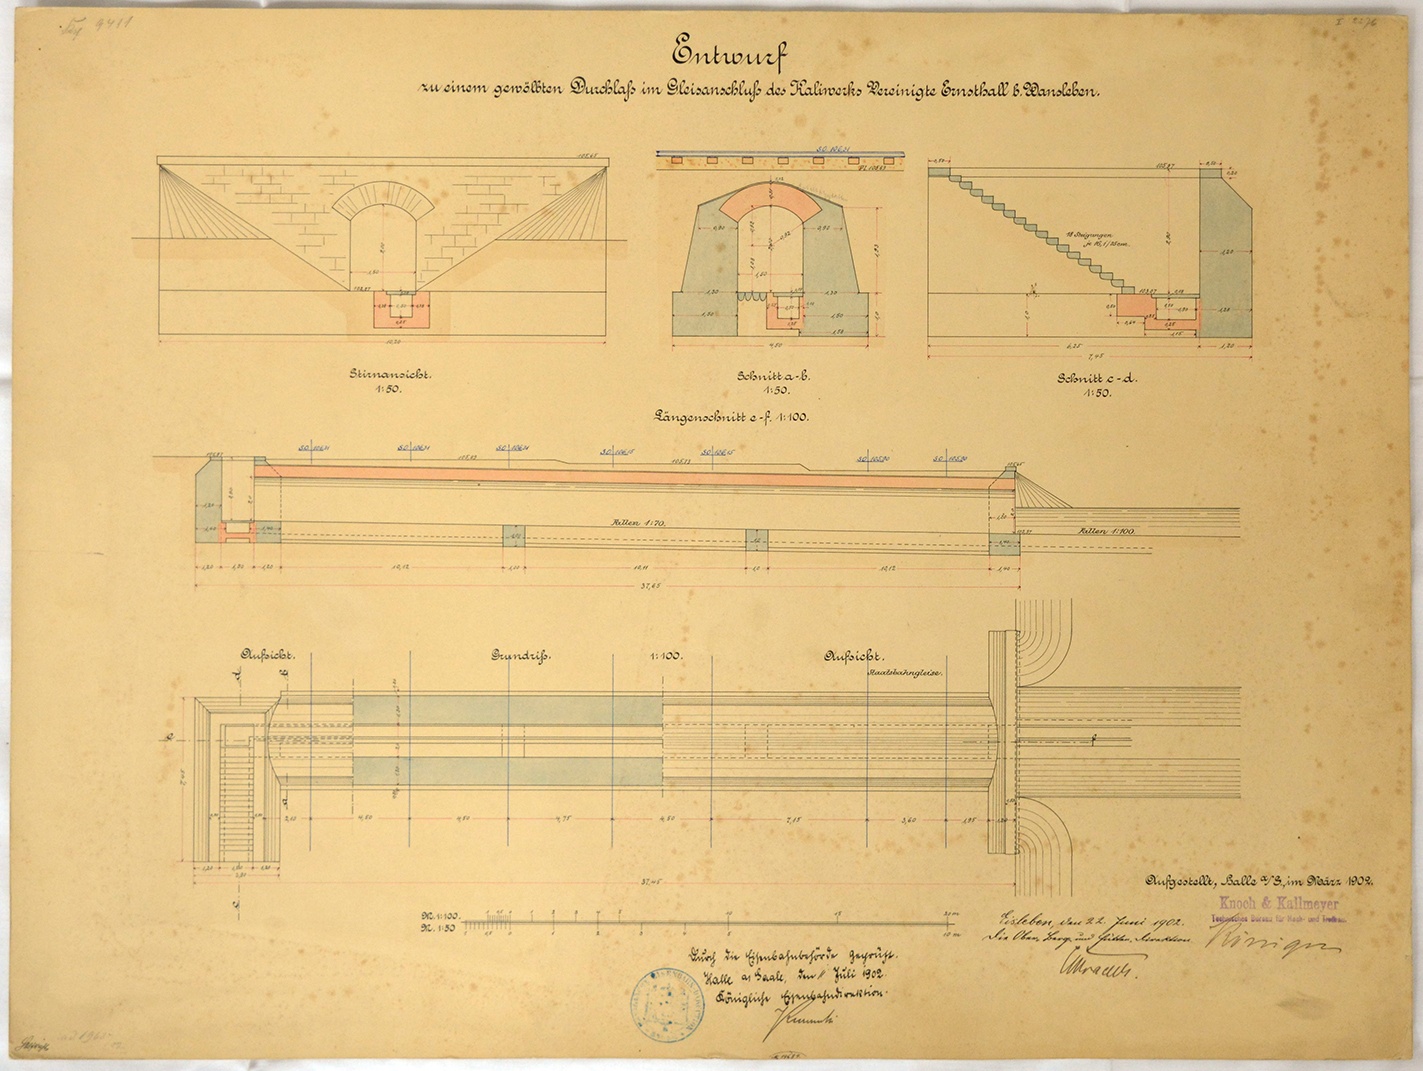 Entwurf zu einem gewölbten Durchlass im Gleisanschluss des Kaliwerks Vereinigte Ernsthall b. Wansleben. (Mansfeld-Museum im Humboldt-Schloss CC BY-NC-SA)